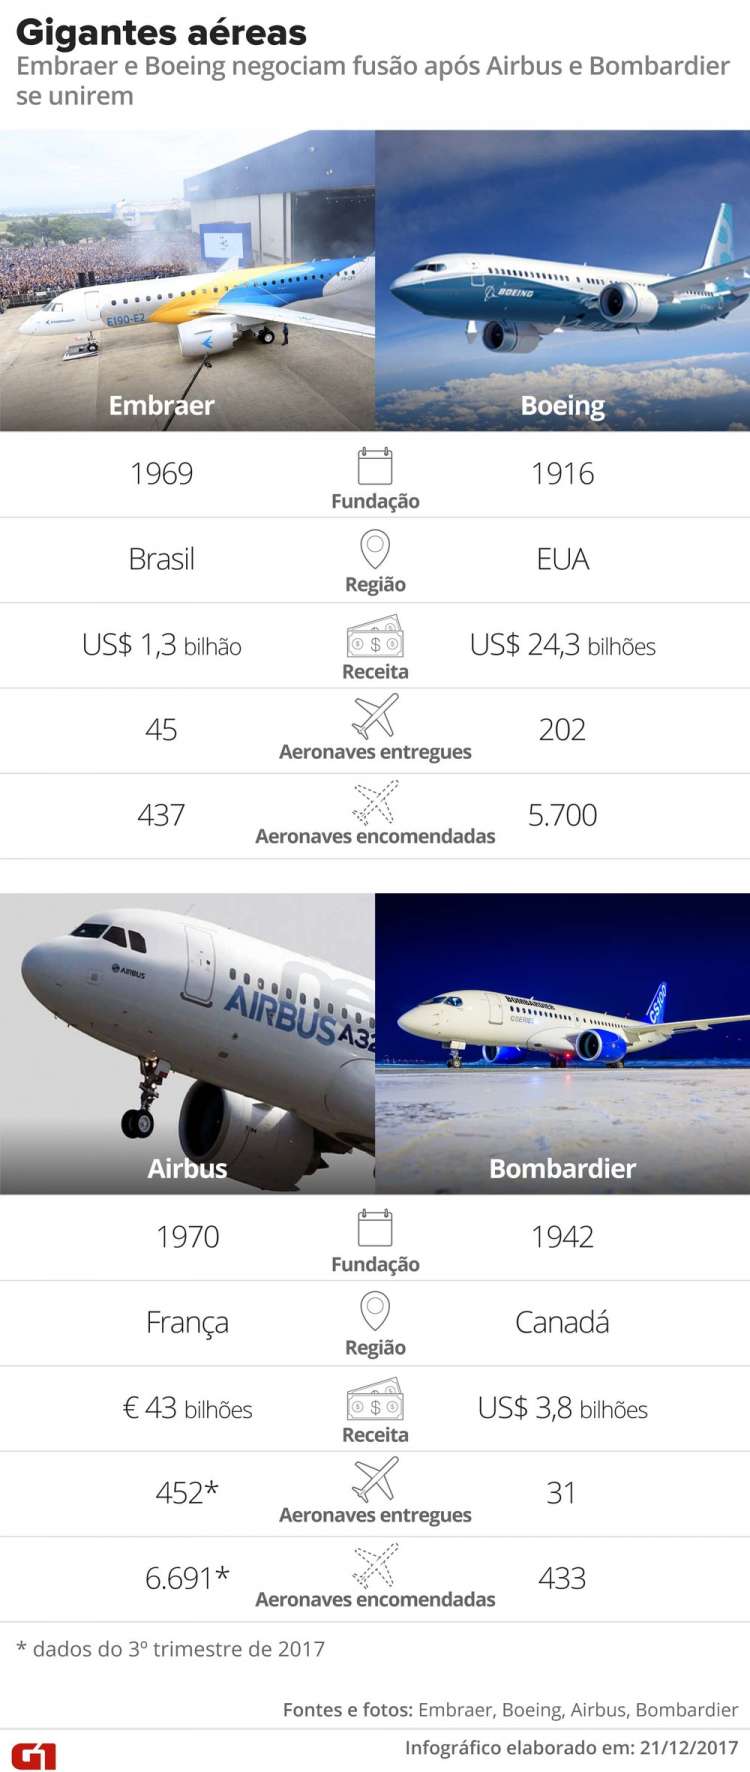 Situação das gigantes aéreas Embraer, Boeing, Airbus e Bombardier